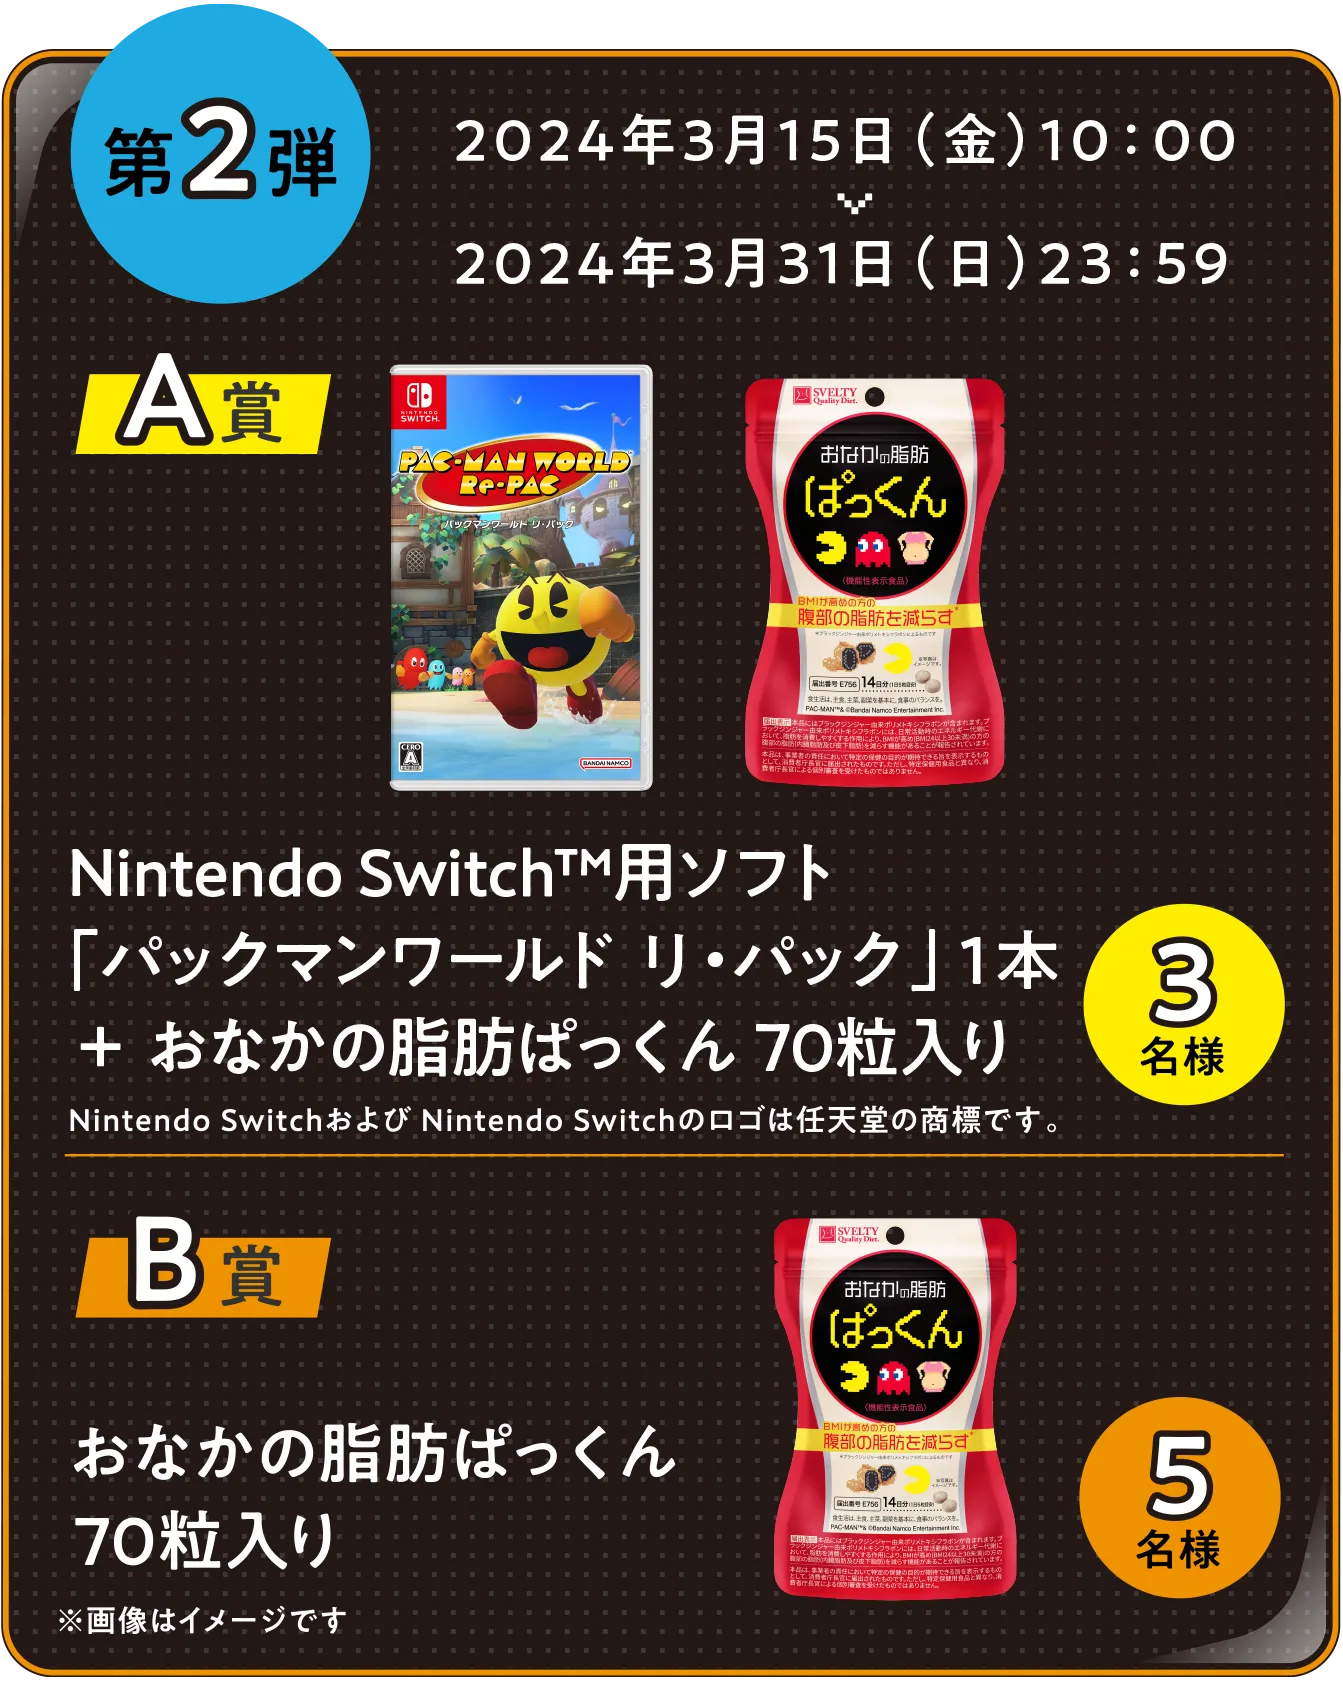 第2弾 A賞：Nintendo Switch™用ソフト「パックマンワールド リ・パック」１本＋おなかの脂肪ぱっくん 70粒入り 3名様　B賞：おなかの脂肪ぱっくん70粒入り 5名様